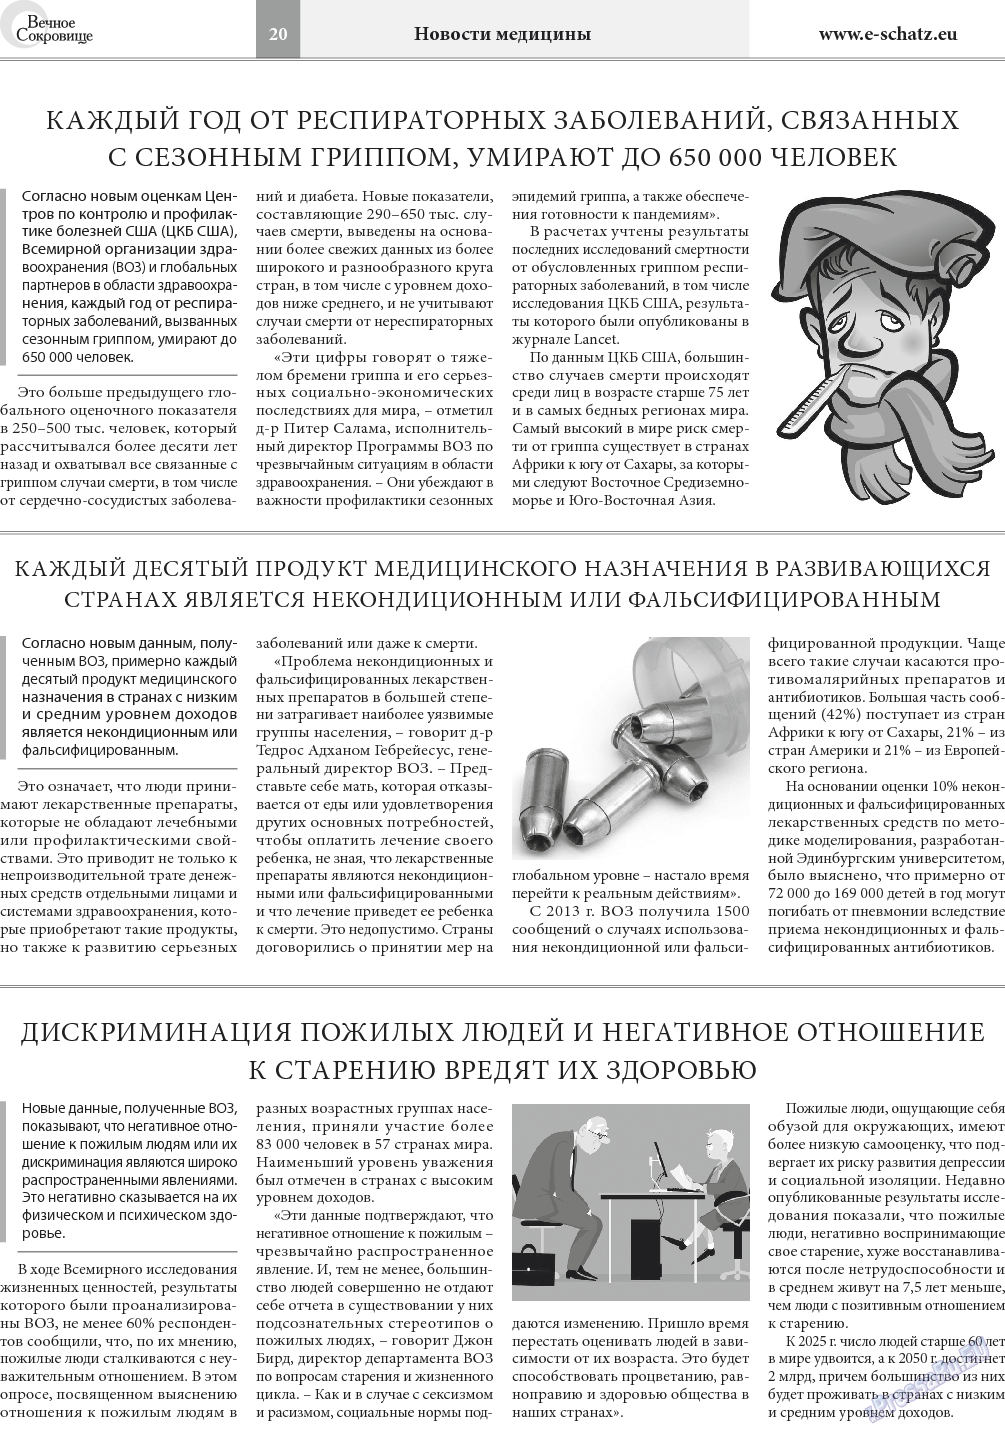 Вечное сокровище, газета. 2018 №1 стр.20